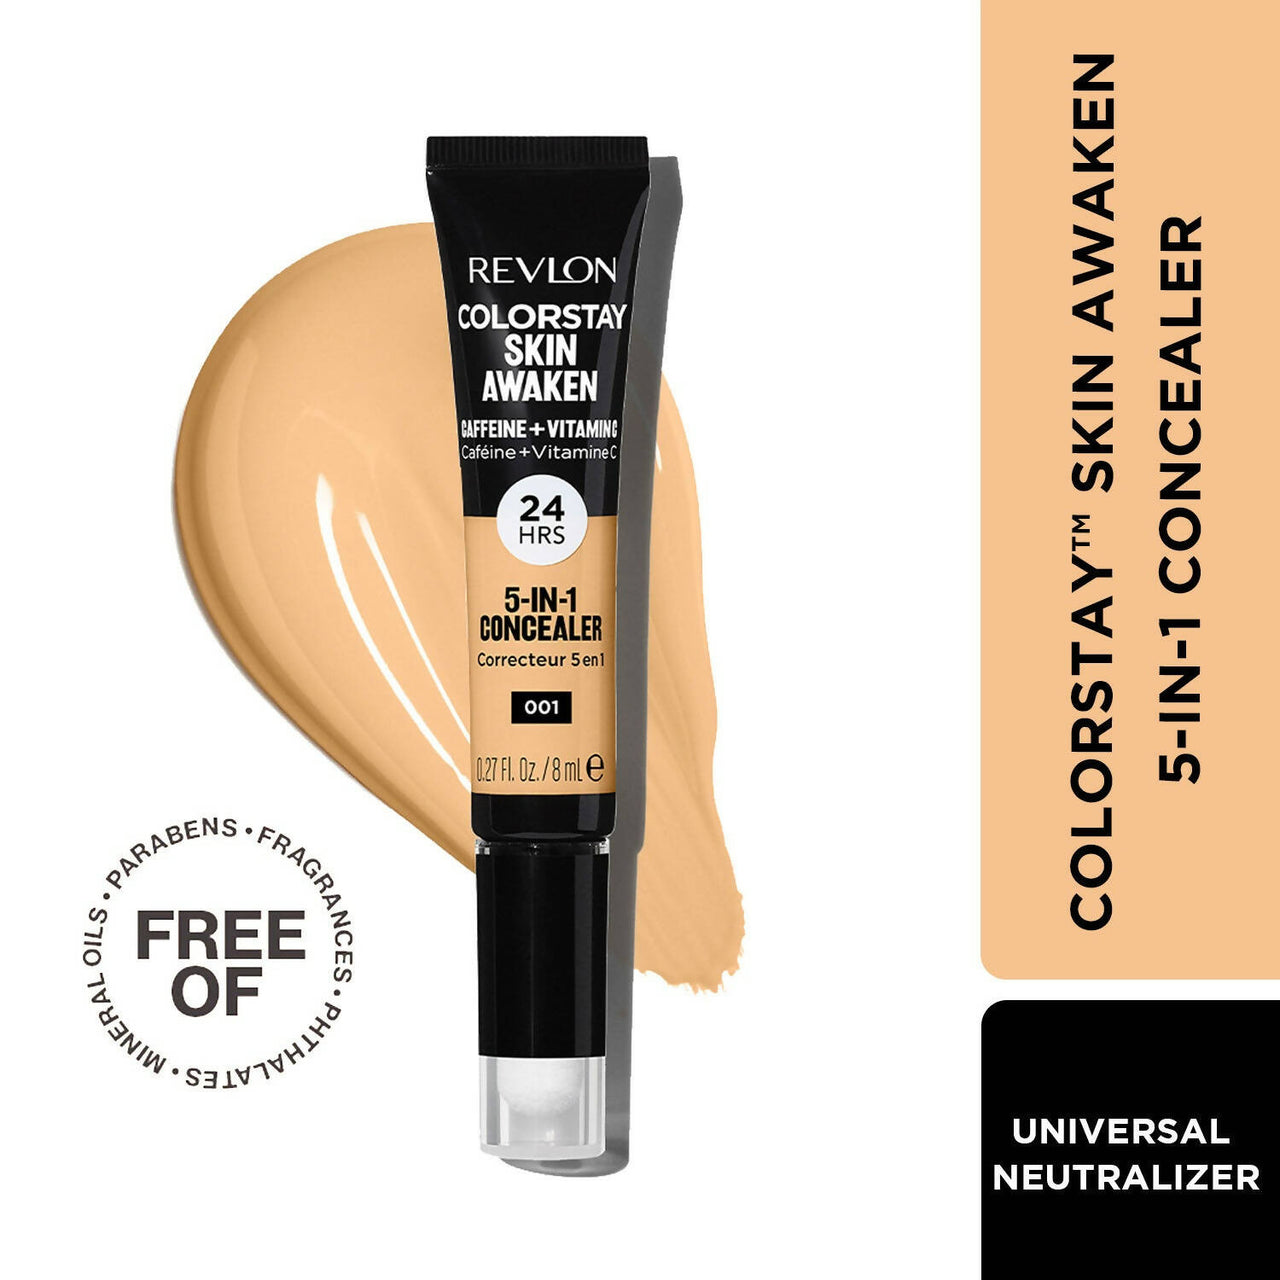 Revlon Colorstay Skin Awaken 5-in-1 Concealer - Universal Neutralizer - Distacart